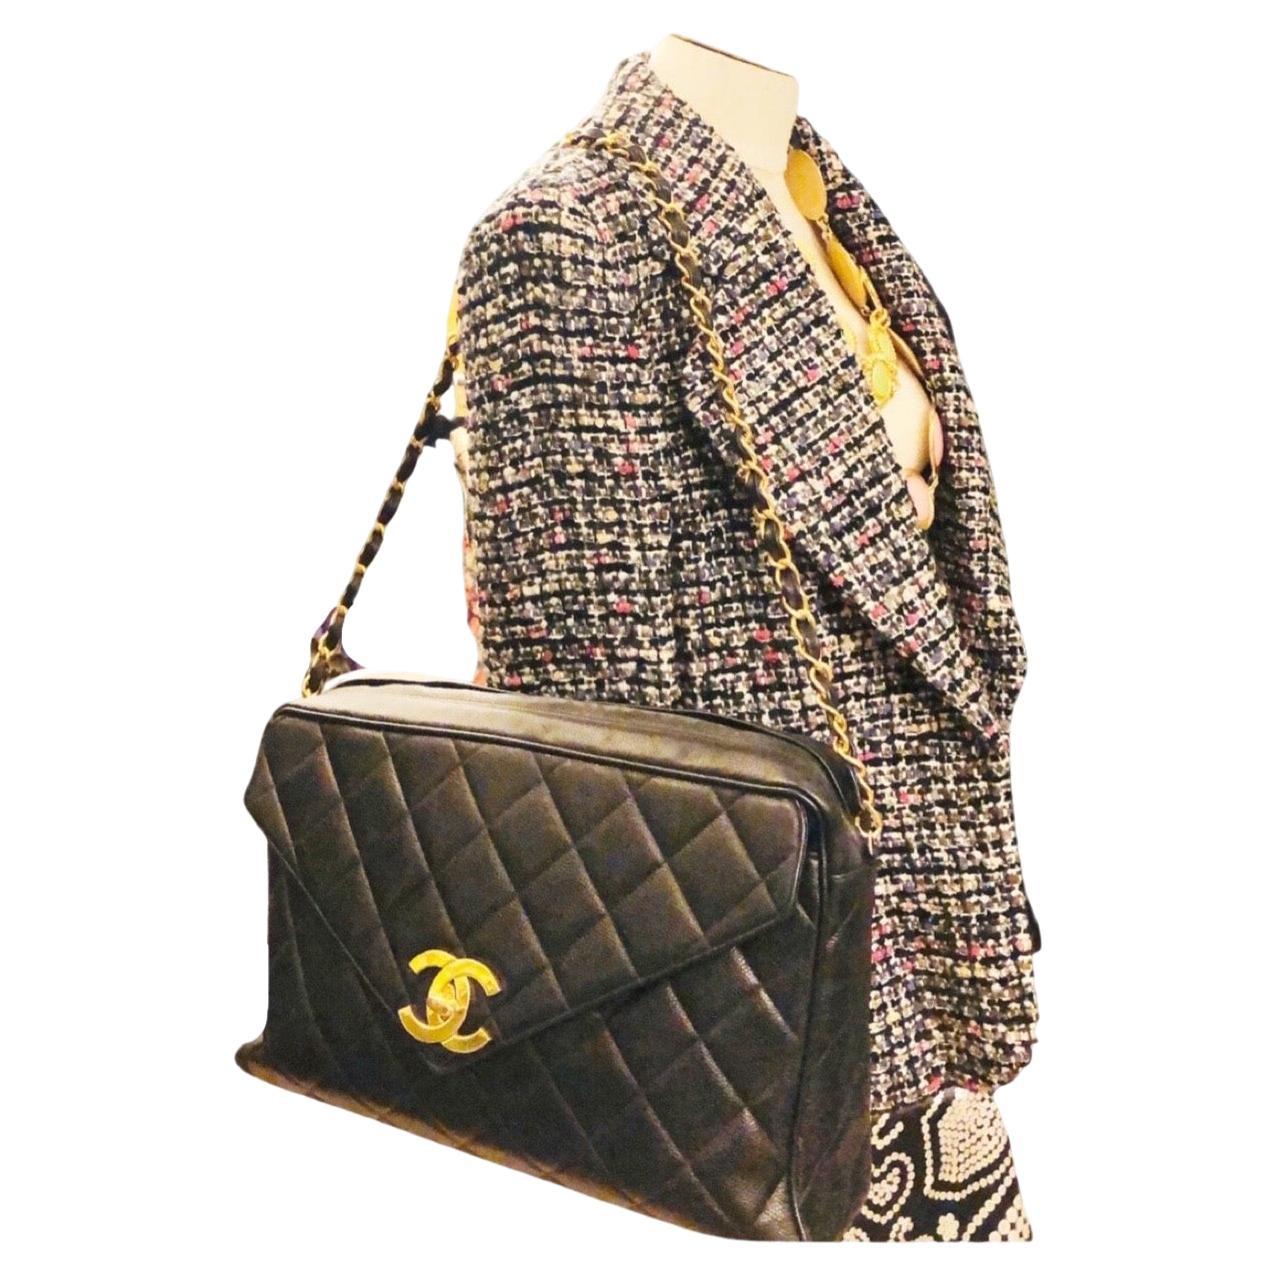 - Vintage 90s Chanel caviar noir matelassé maxi jumbo enveloppe  sac à bandoulière. 

- Fermeture à glissière avec boule dorée 